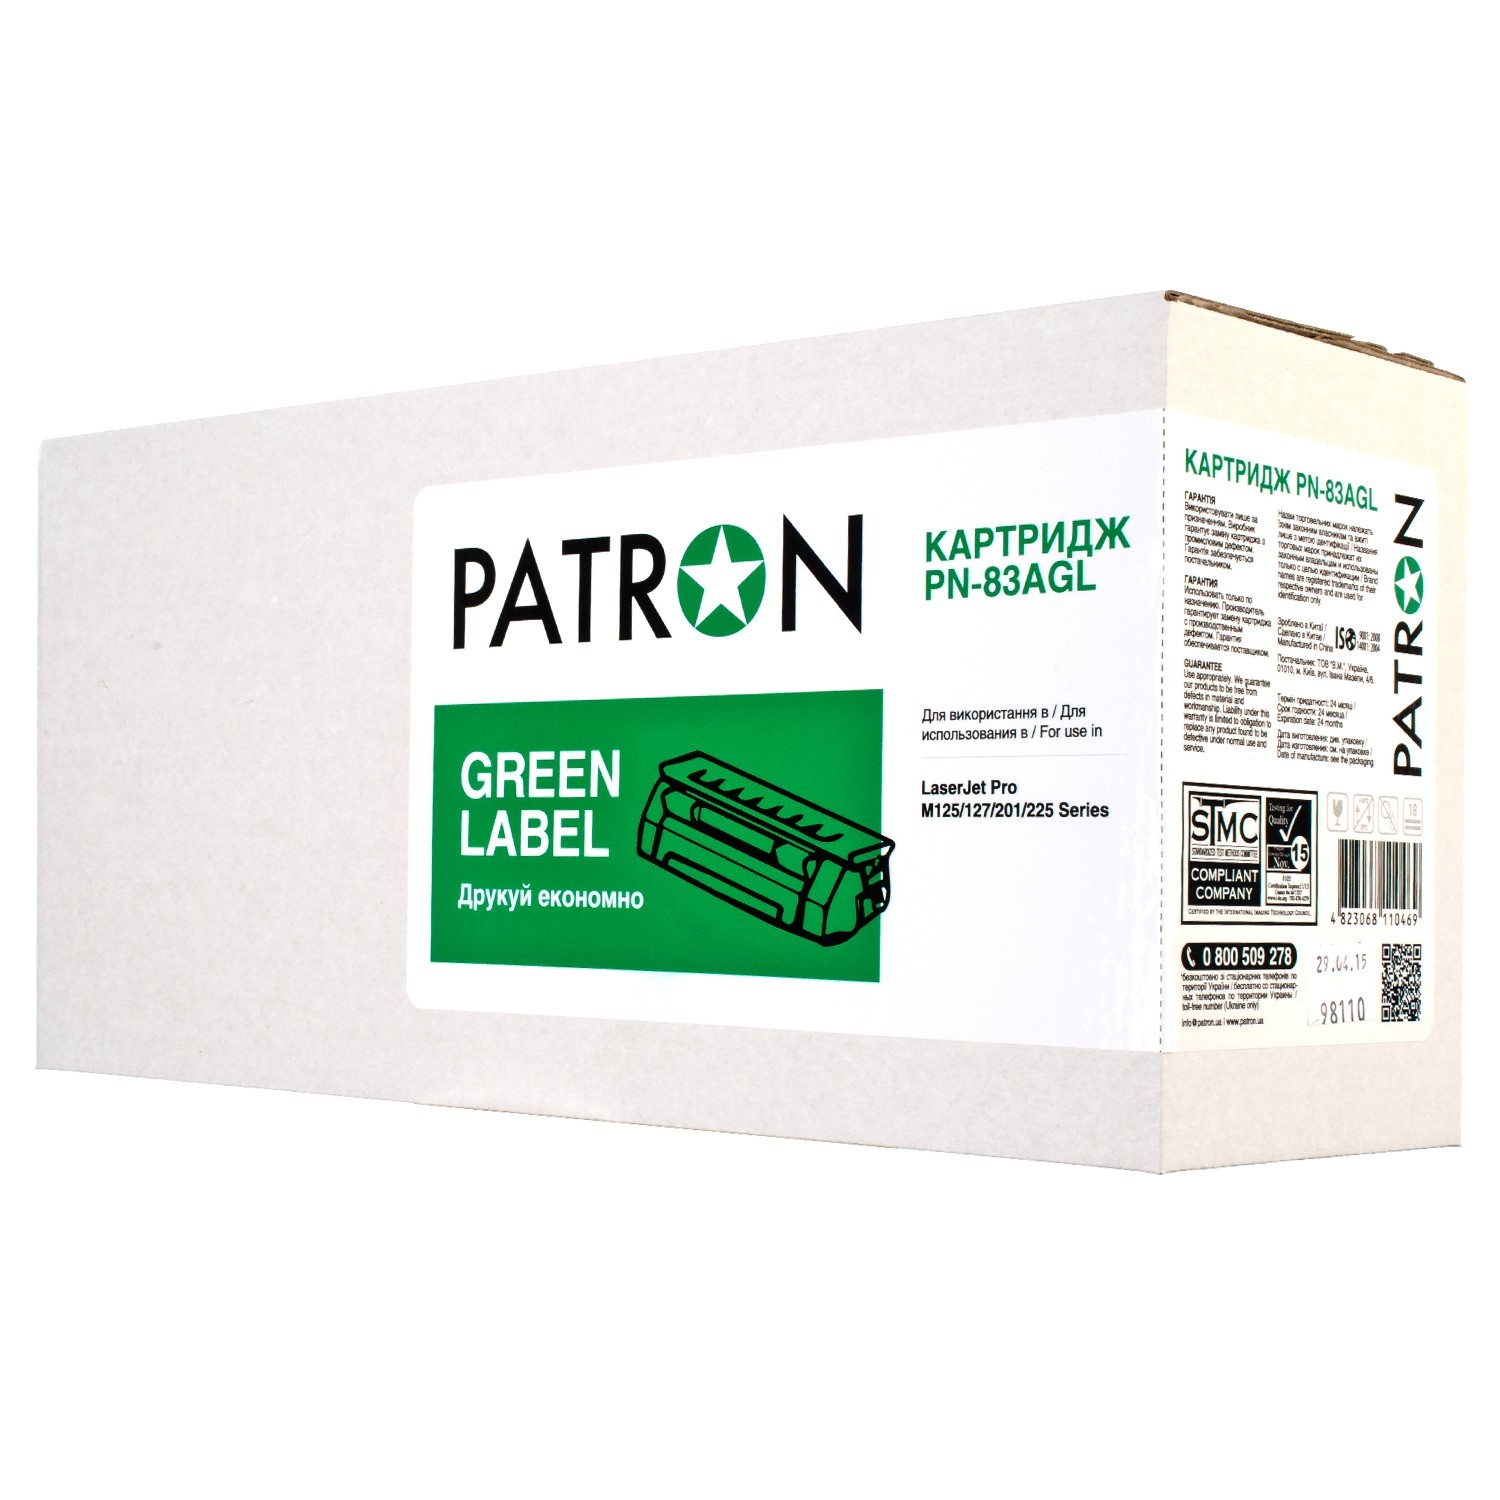 КАРТРИДЖ HP LJ CF283A (PN-83AGL) PATRON GREEN Label